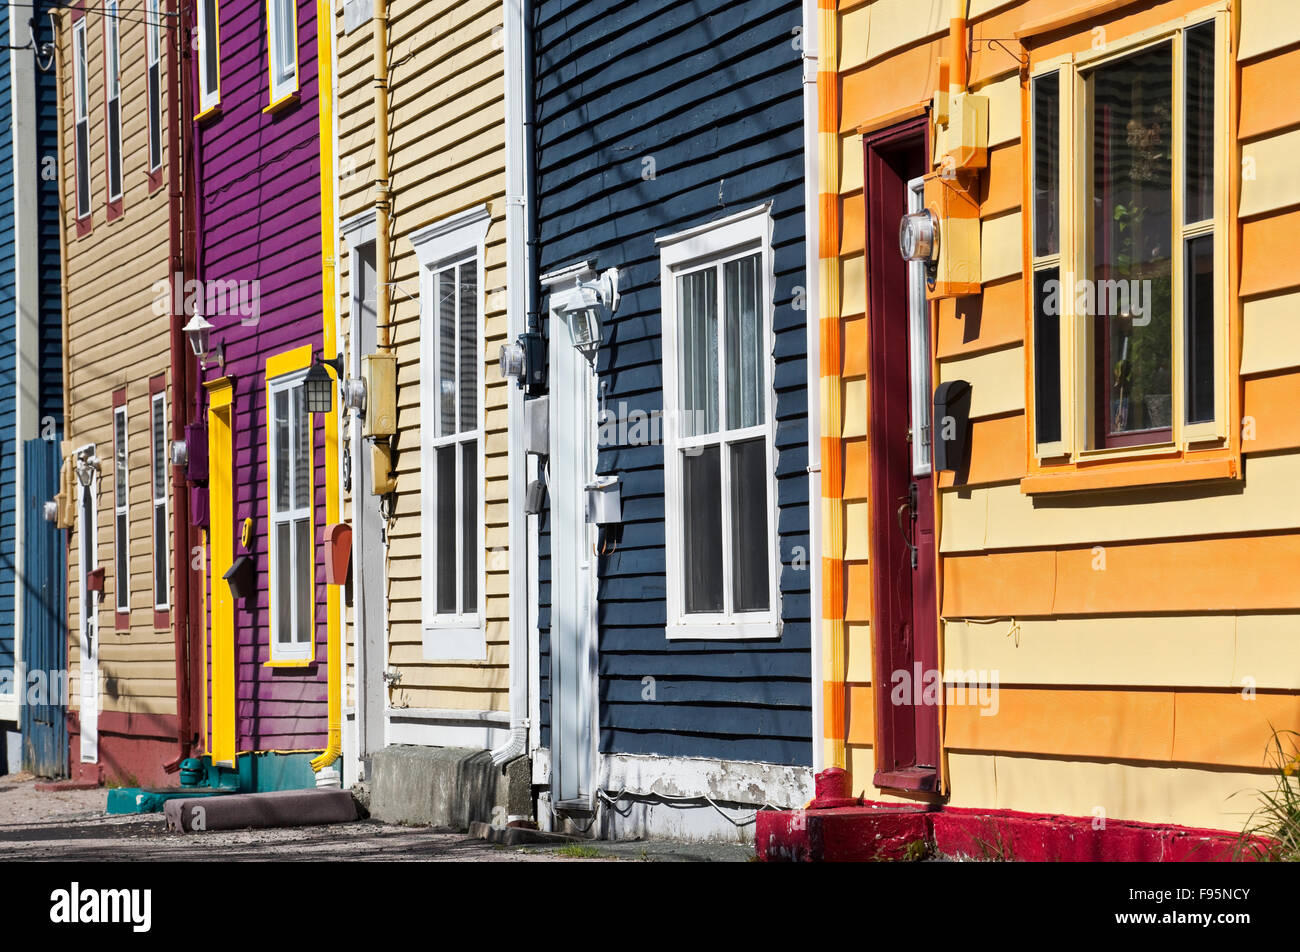 Mehrere Bereiche der Stadt von St. John's Feature Jellybean Reihenhäuser so genannt wegen ihrer bonbonbunte Farben, das Ergebnis der Stockfoto